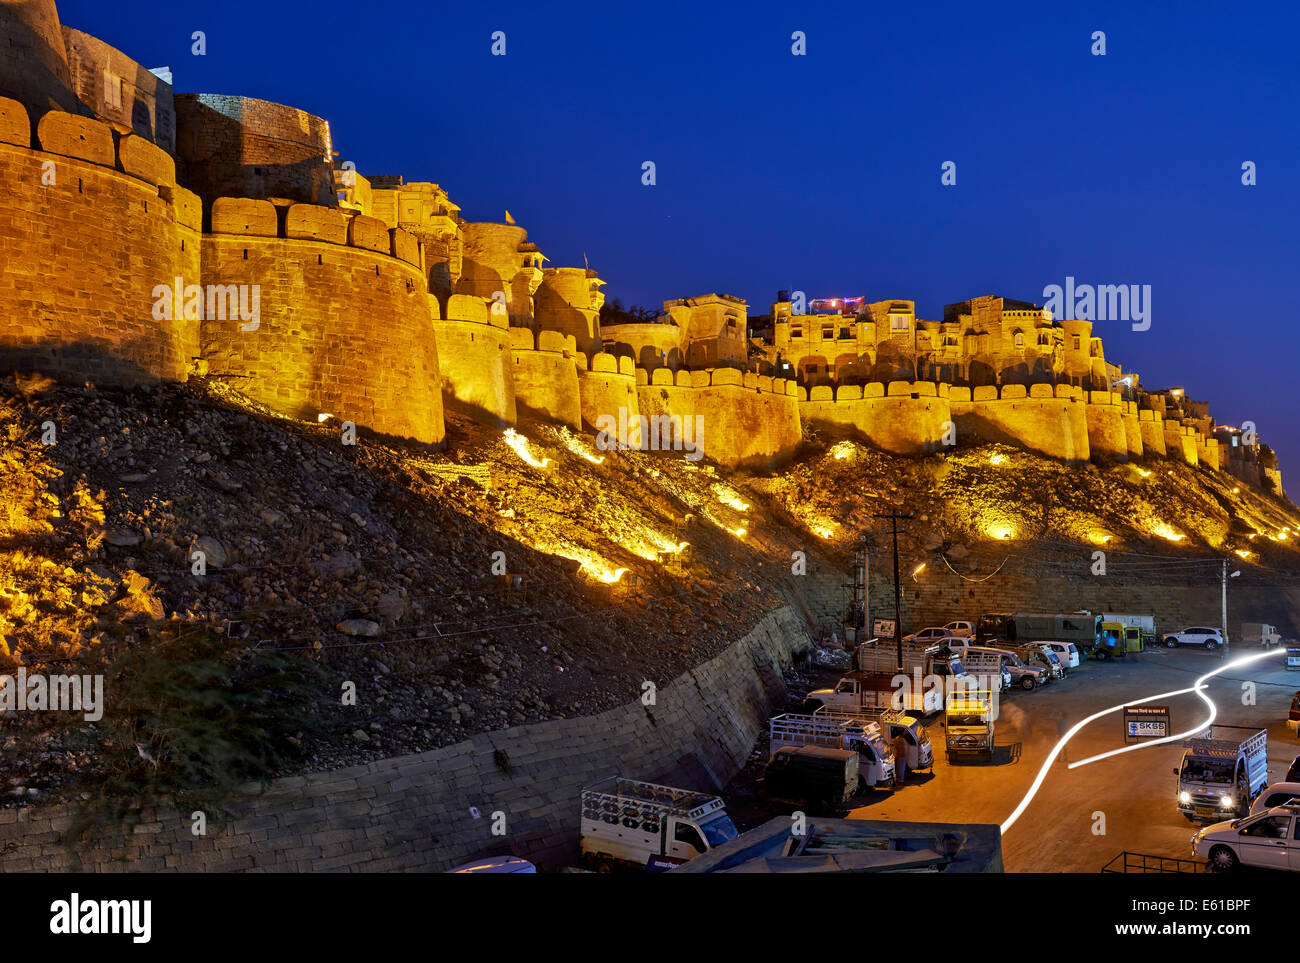 Photo de nuit illuminée de mur de la ville de Jaisalmer, Rajasthan, India Banque D'Images